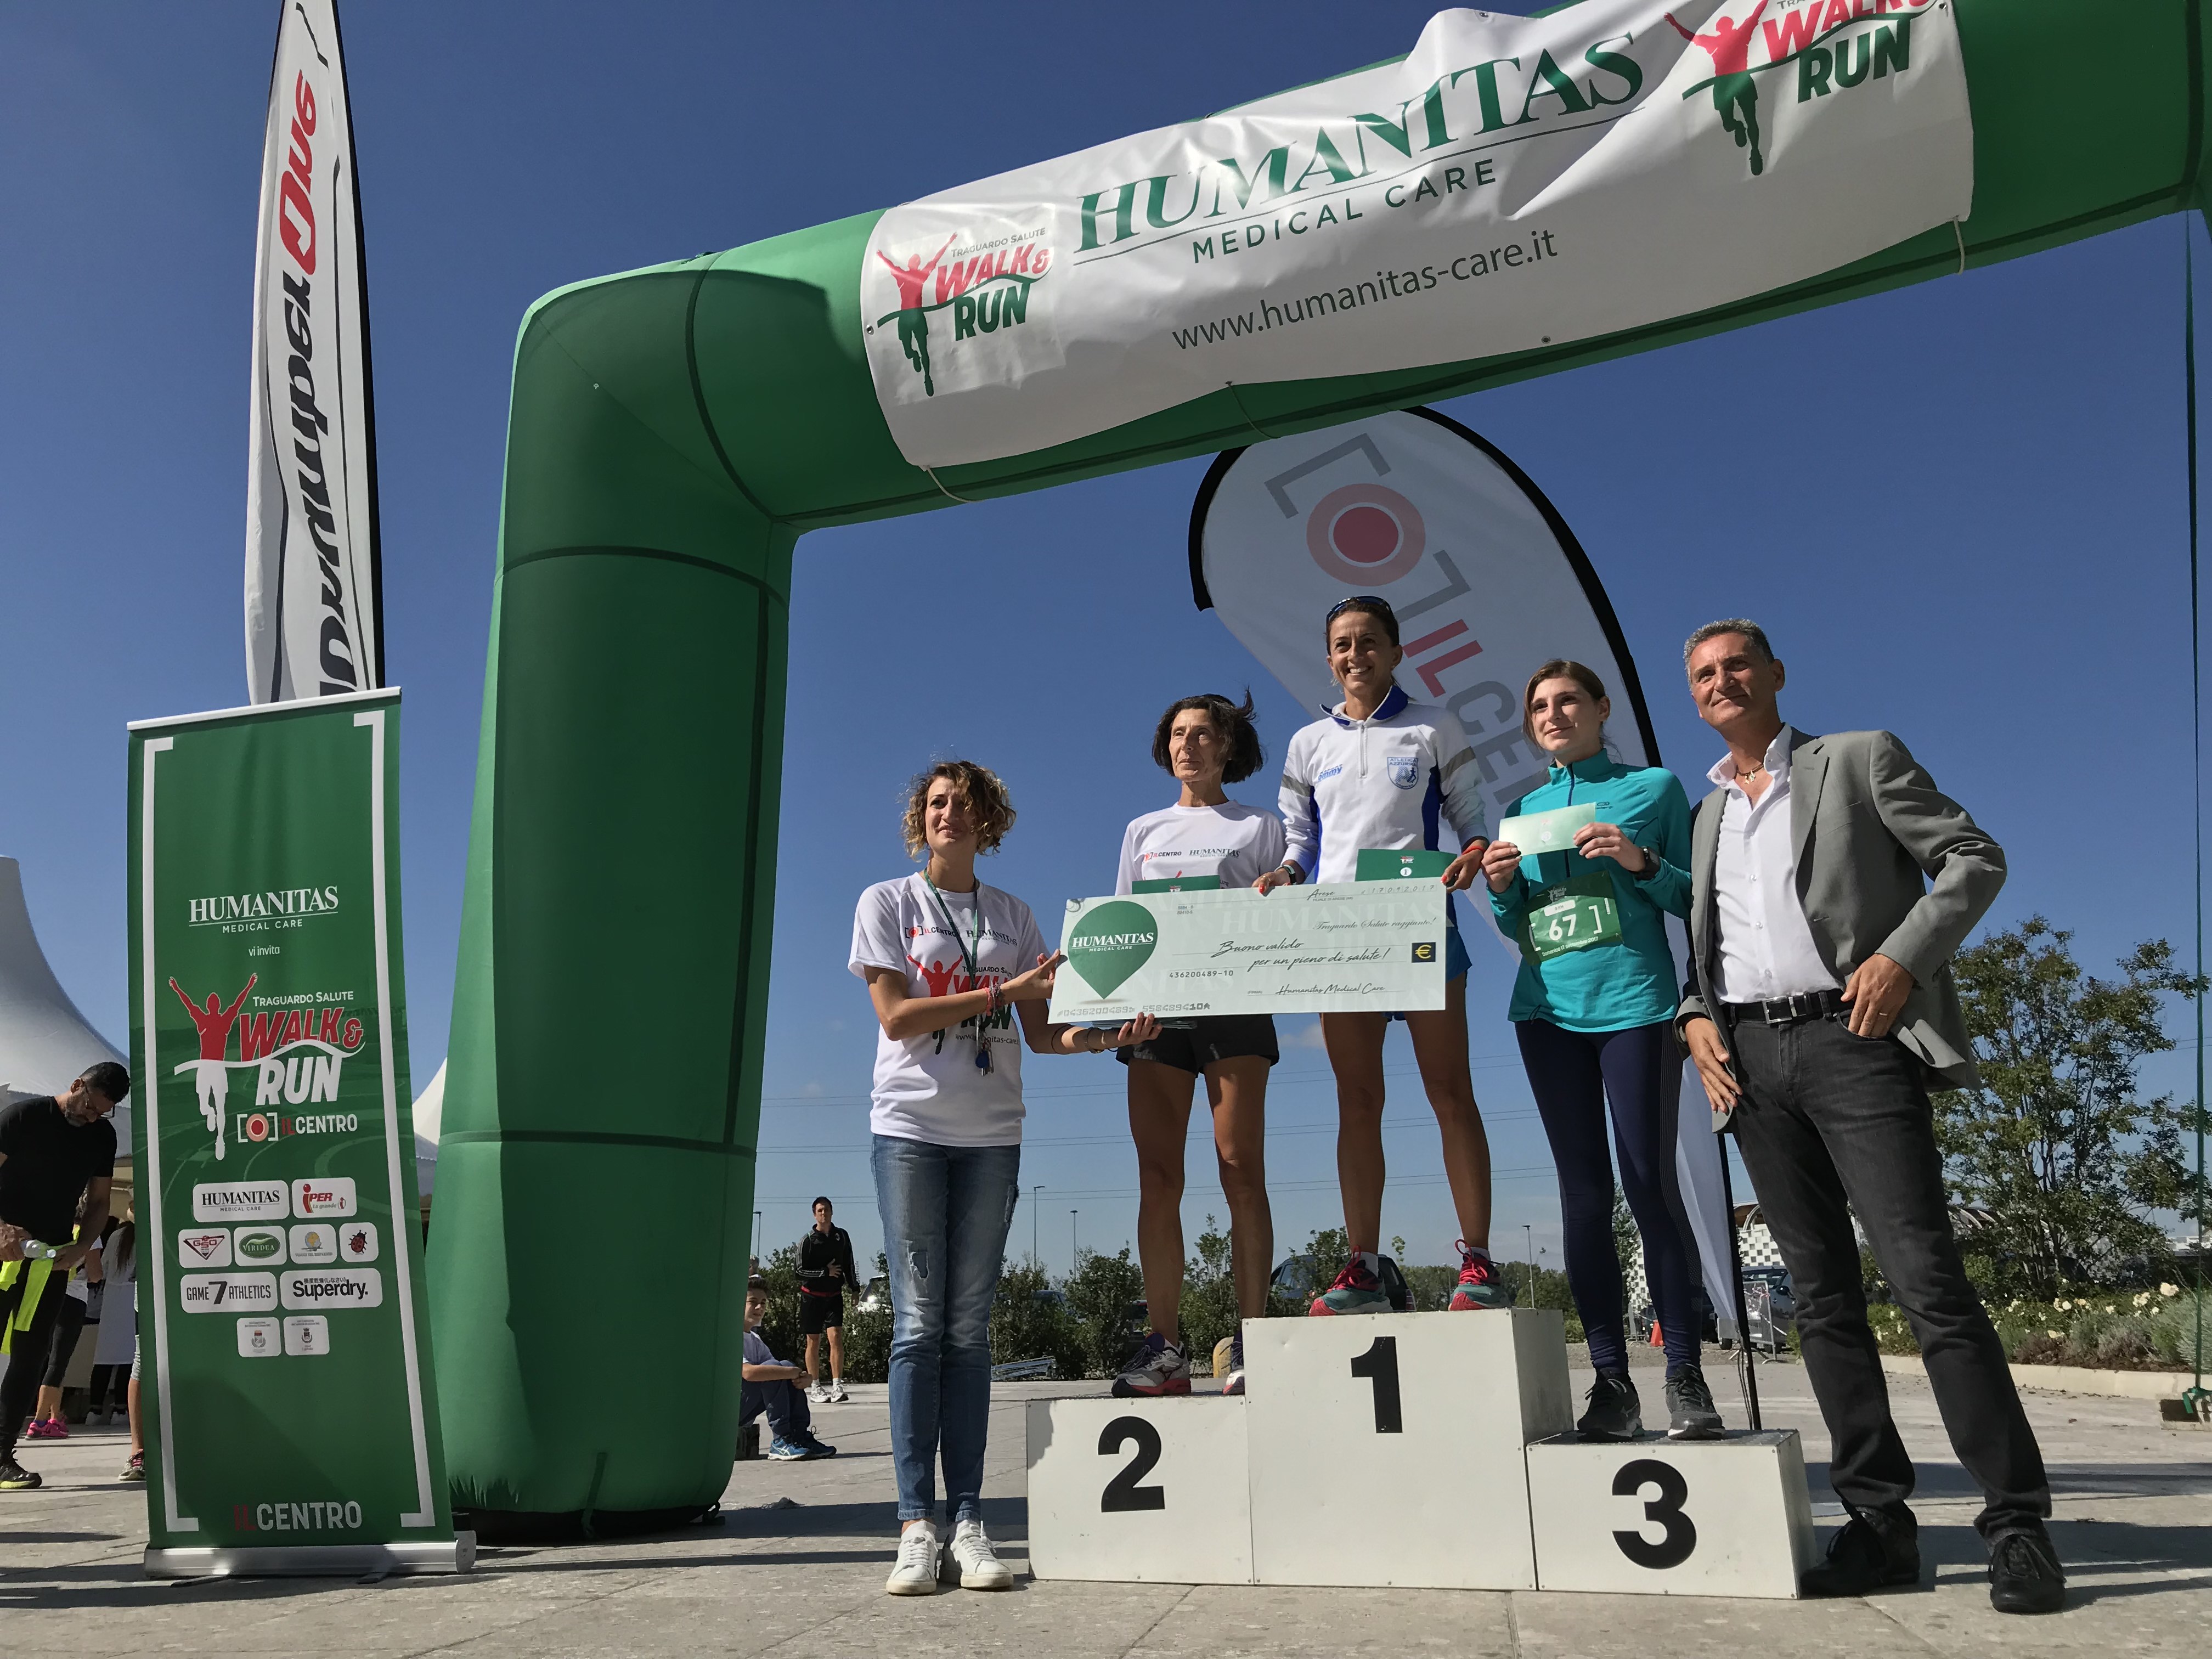 IL CENTRO e HUMANITAS MC - Walk&run_vincitori 8 km femminile